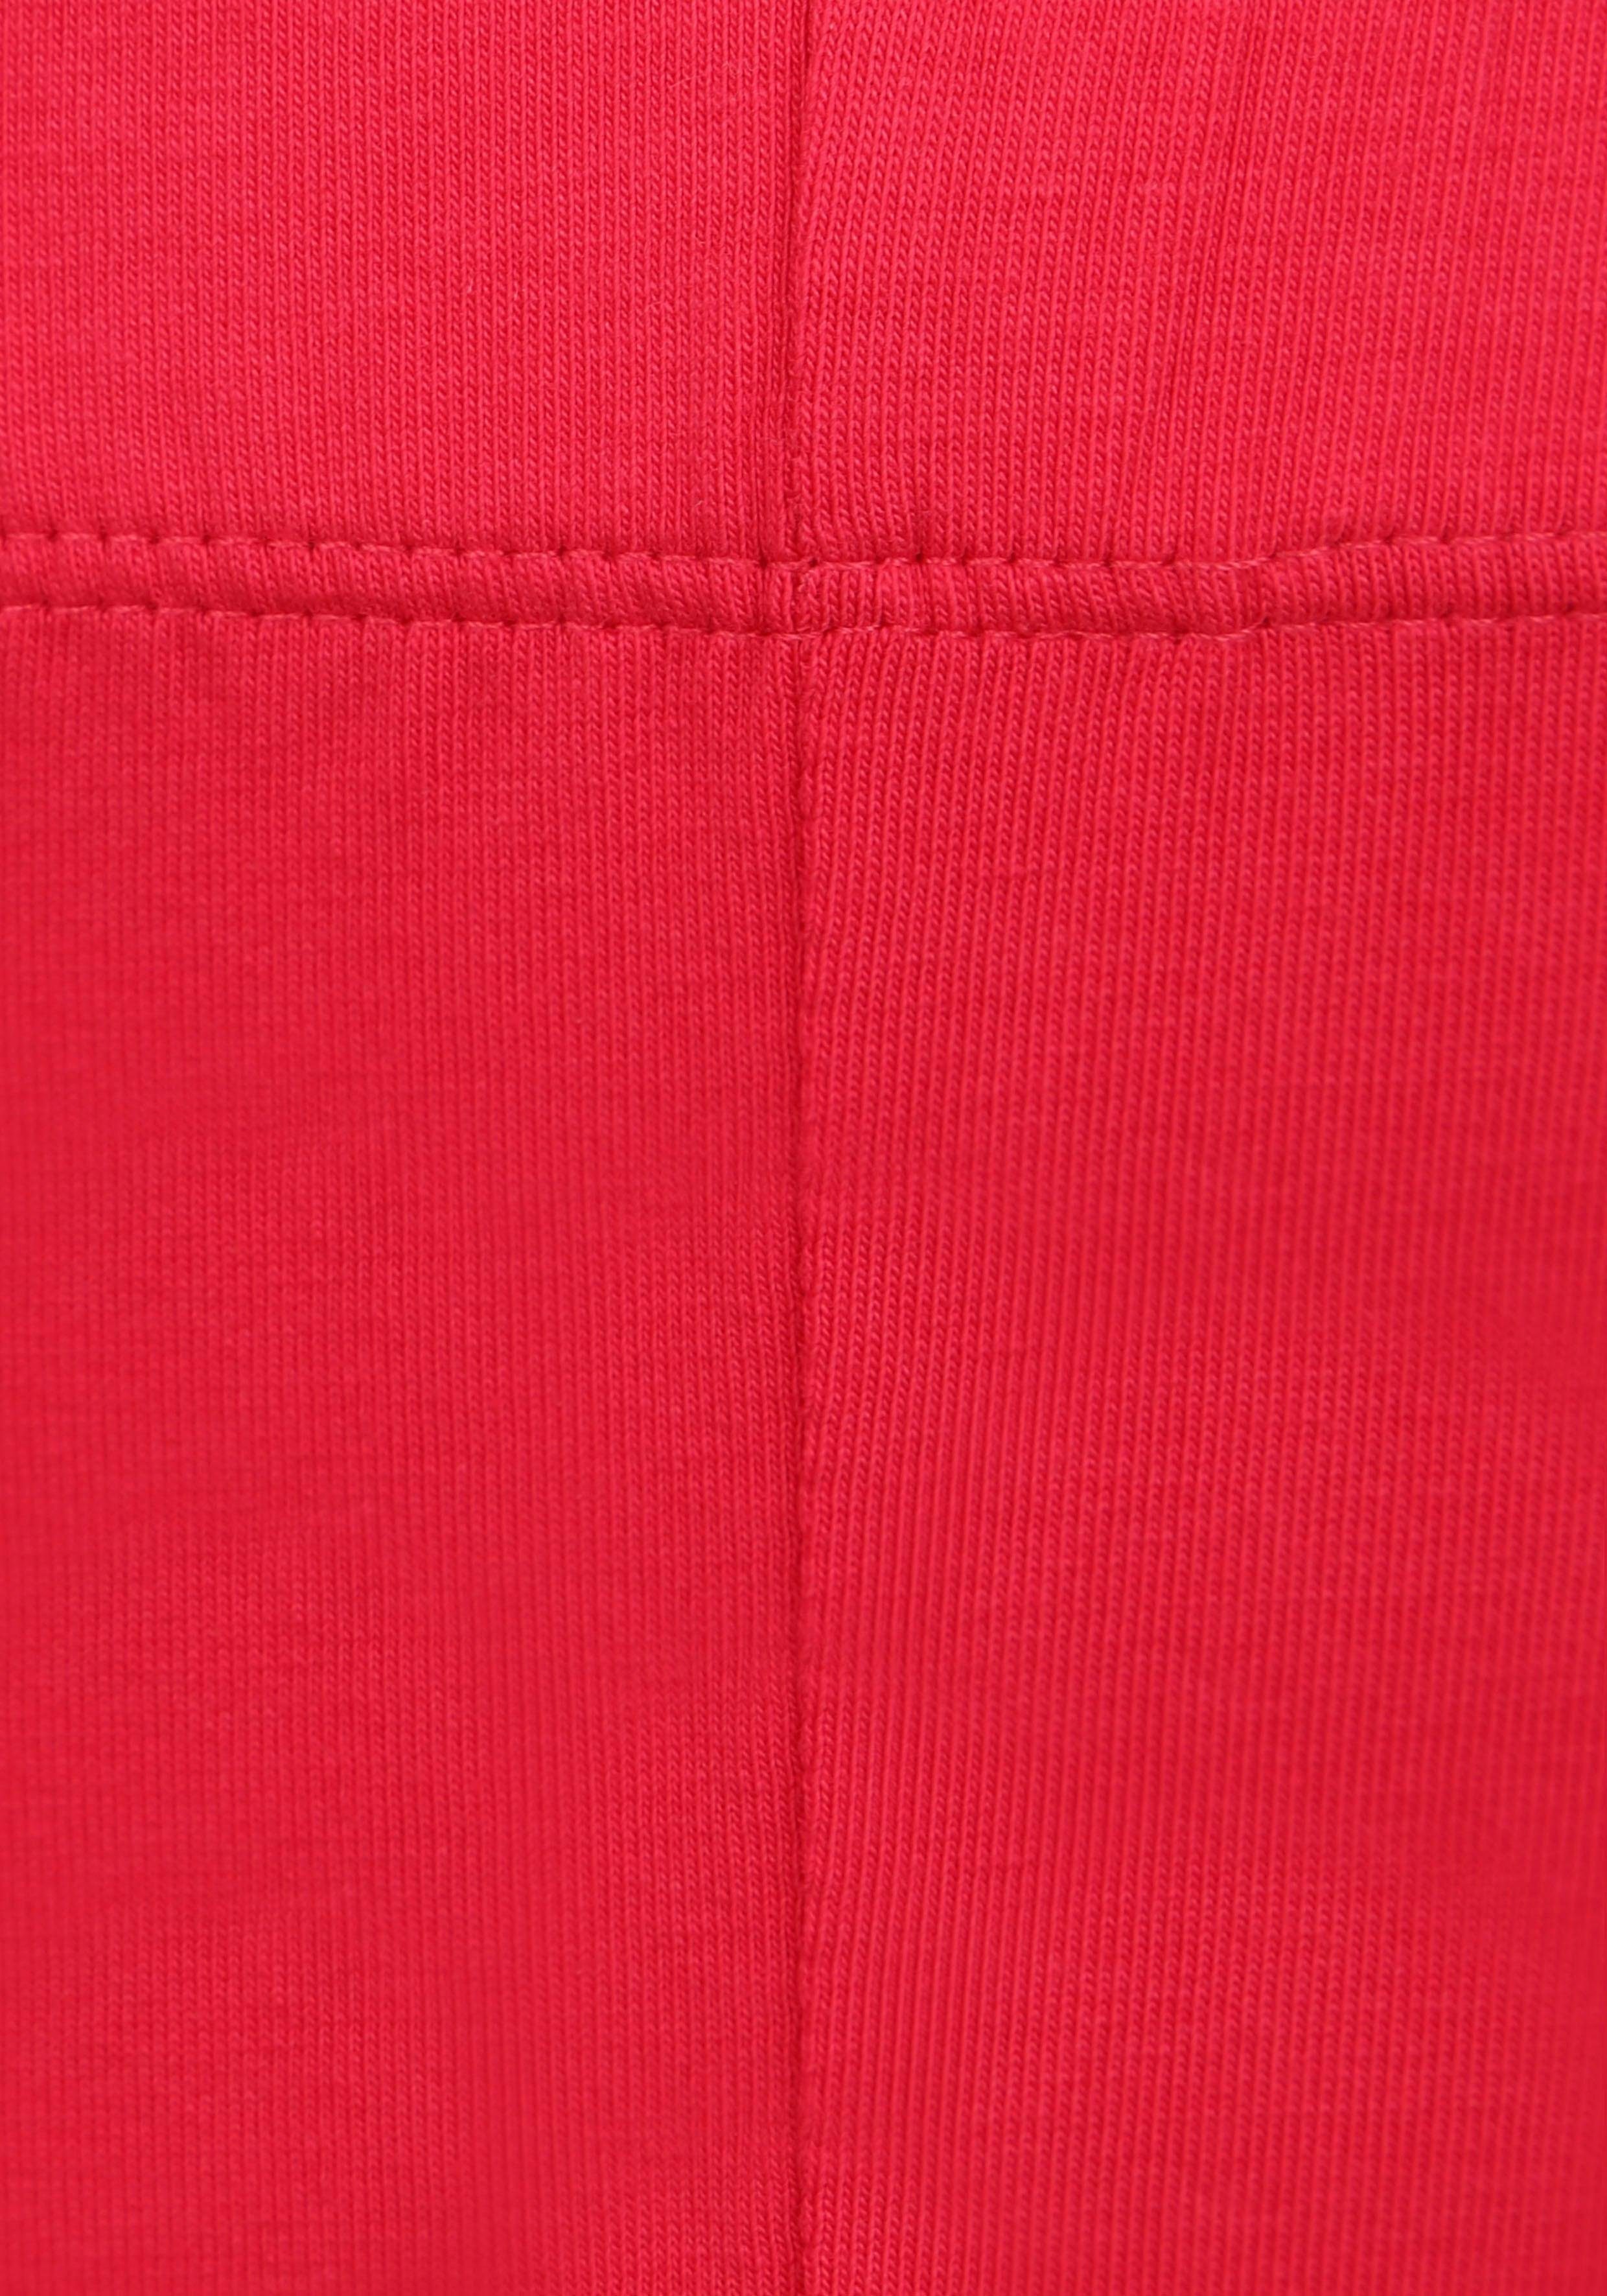 KIDSWORLD Leggings (2er-Pack) in 3/4 rot, Länge weiß